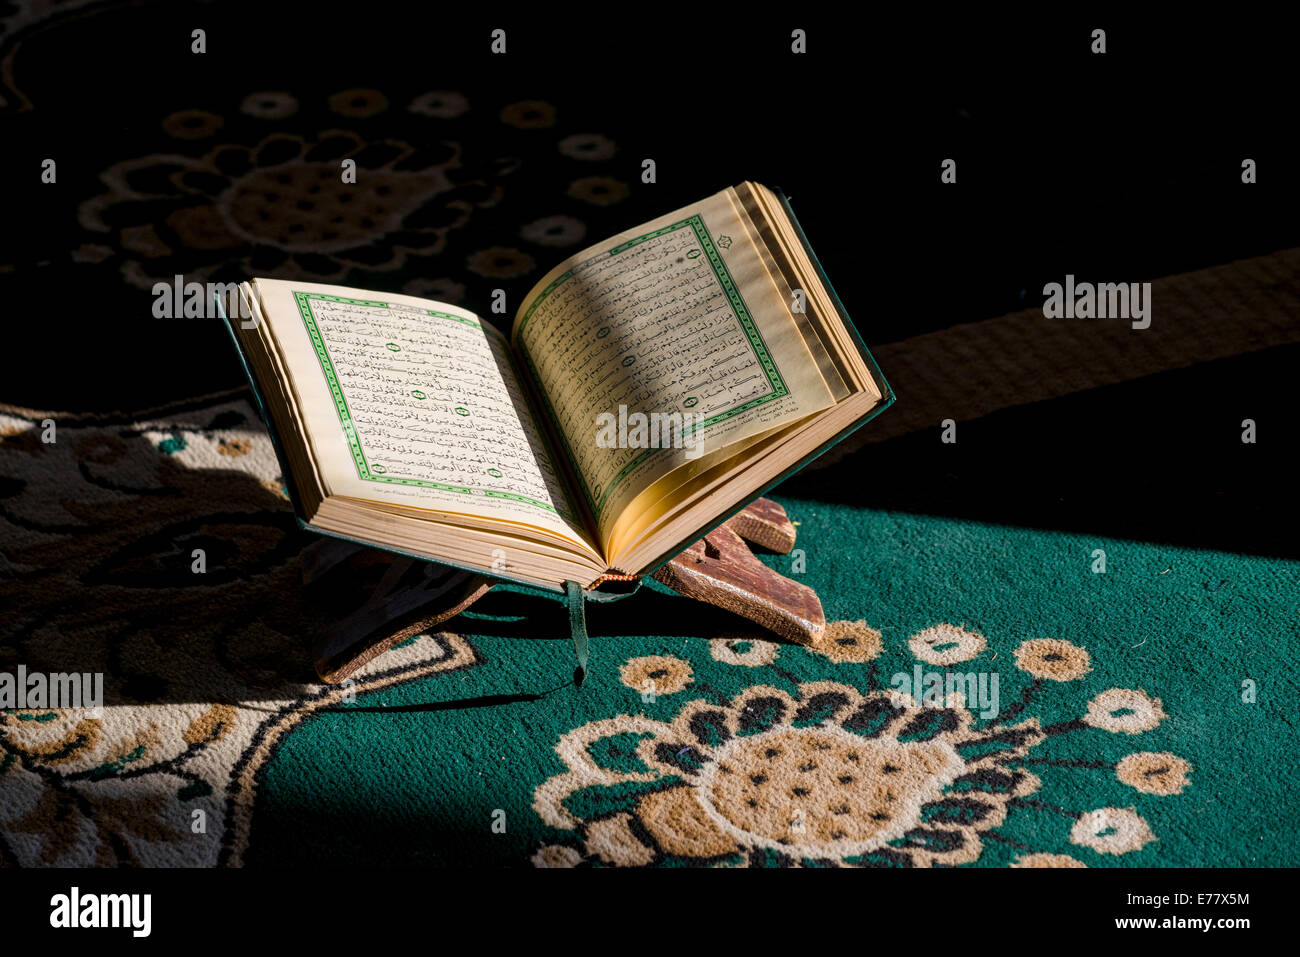 Il libro sacro dell'Islam, il Corano, il Corano, è aperto per la lettura in un rack in piedi su un tappeto verde all'interno del Sidi Moschea Saiyyed Foto Stock